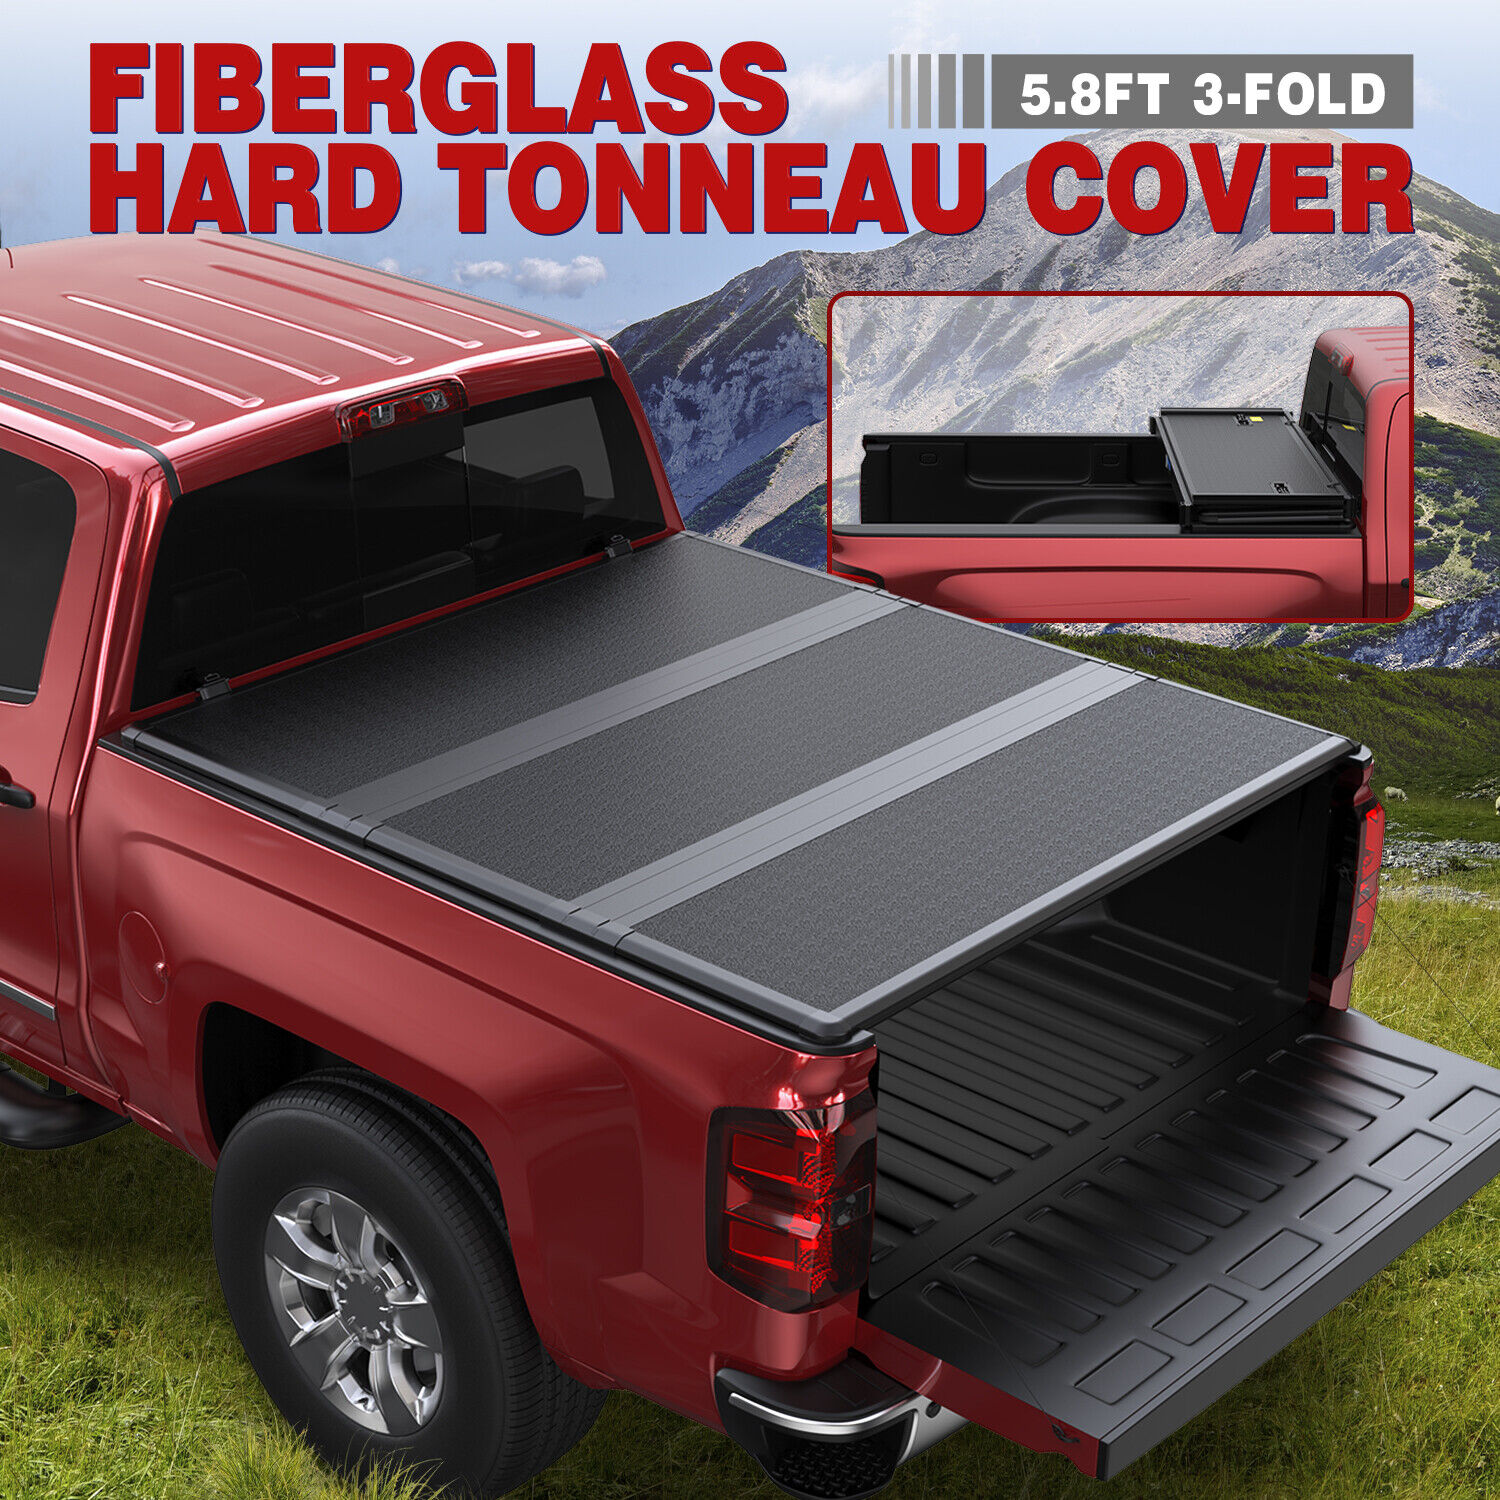 5.7/5.8FT 3-Fold Fiberglass Hard Tonneau Cover For 04-15 Nissan Titan Truck Bed